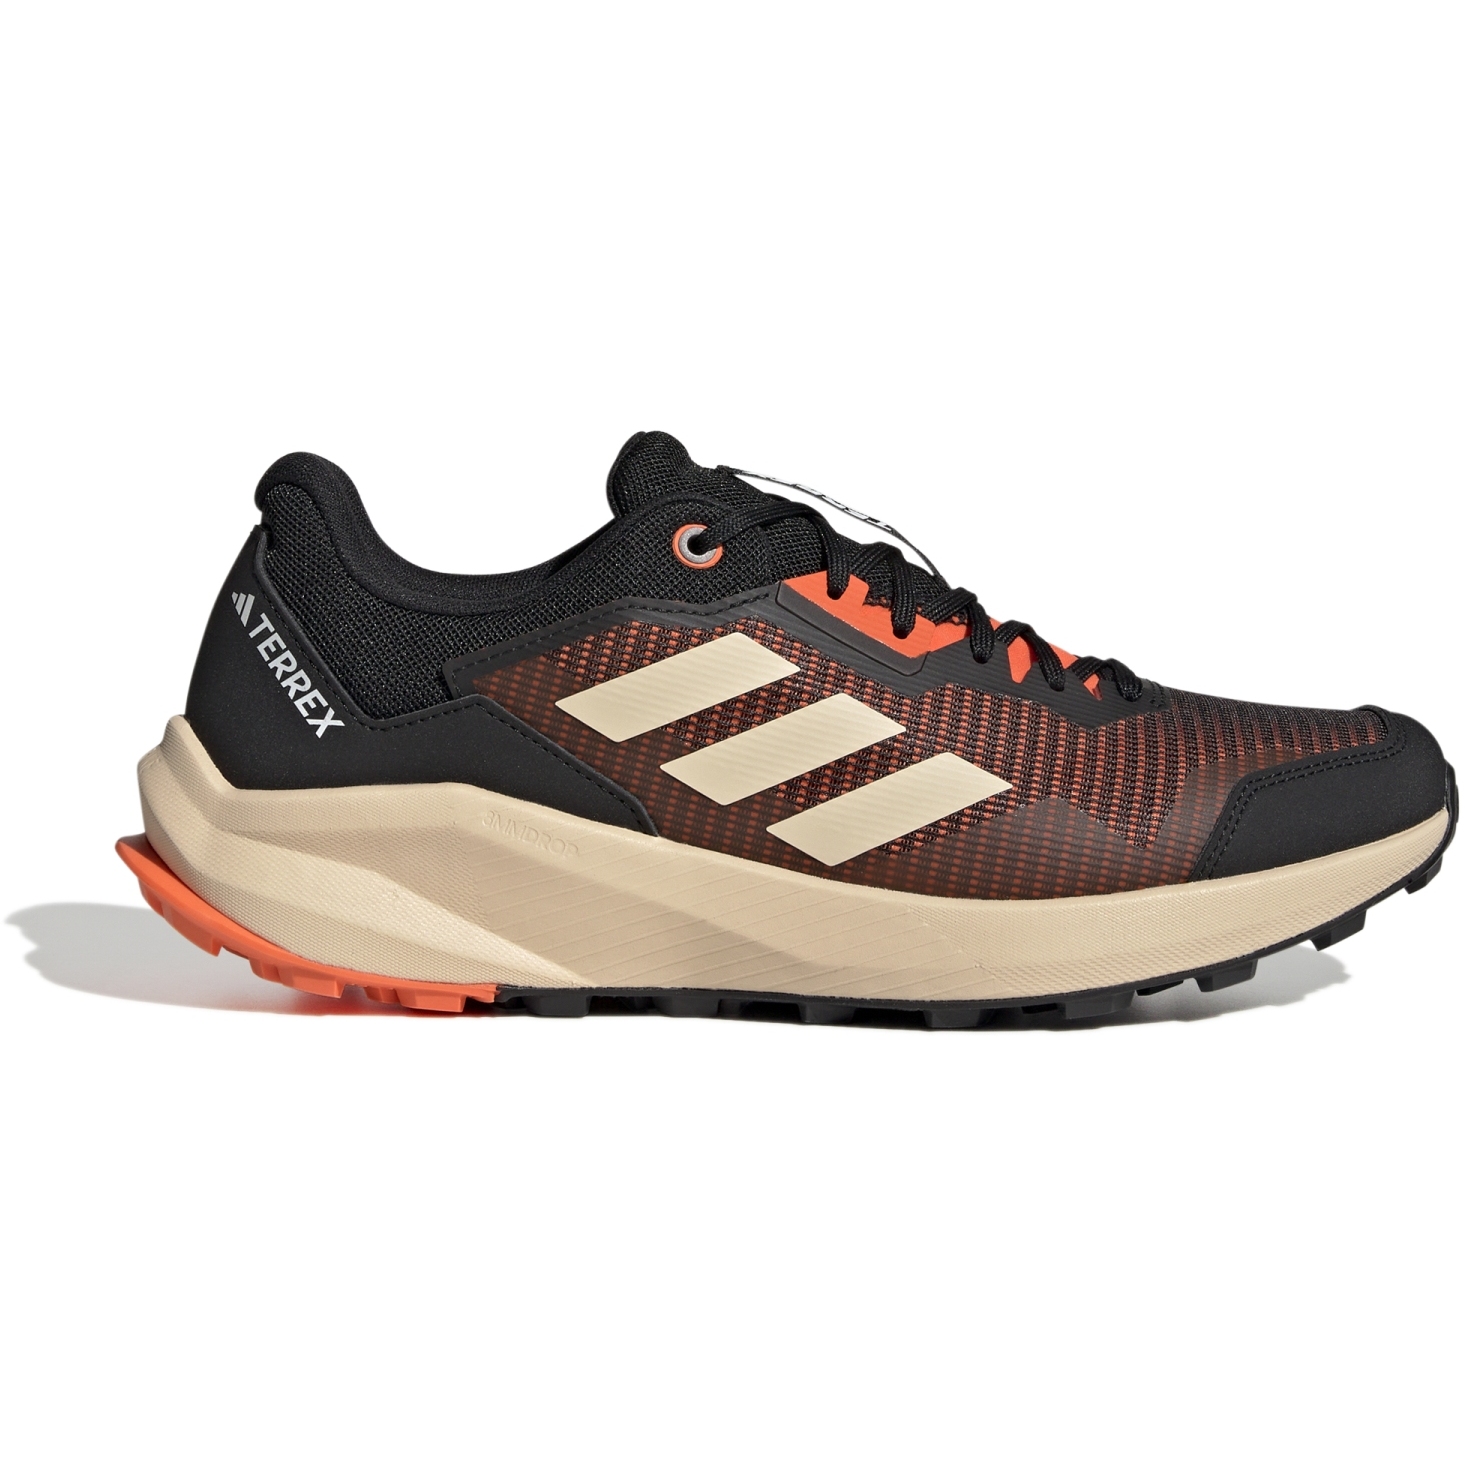 Produktbild von adidas TERREX Trailrider Trailrunning-Schuhe Herren - impact orange/footwear white/core black HR1156